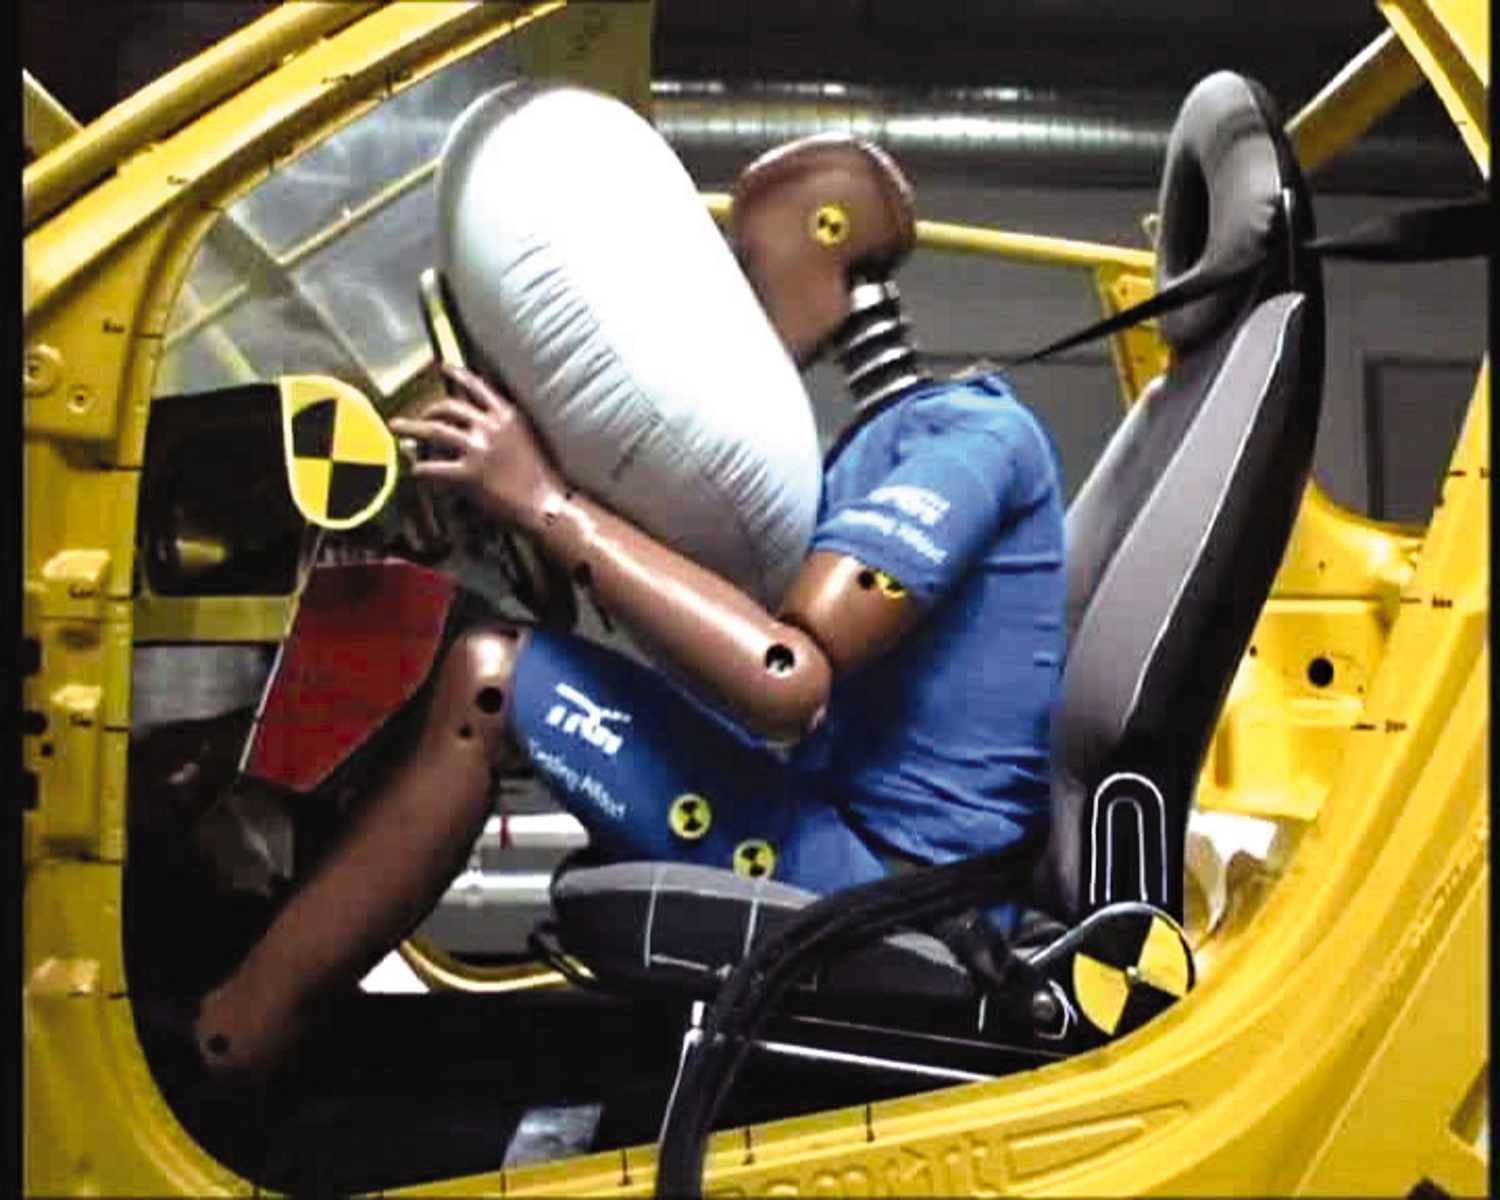 Associados ao uso correto do cinto de segurança, o airbag protege e salva vidas em casos de acidentes, mas as bolsas produzidas pela Takata deixaram inúmeras vítimas